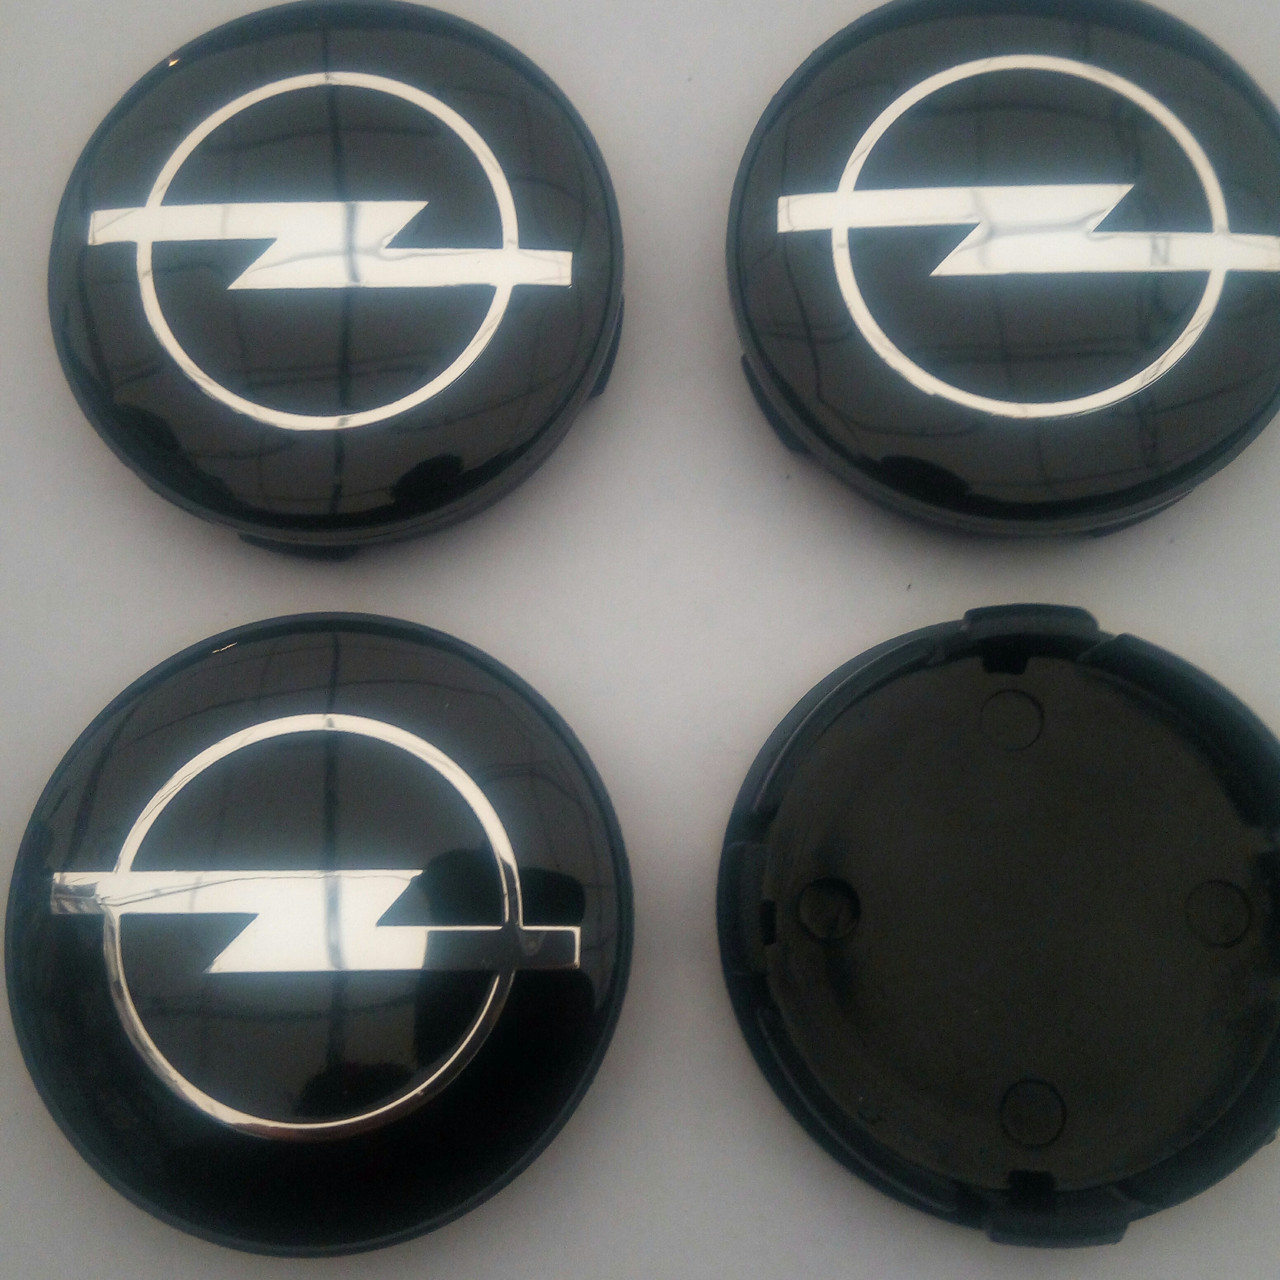 Ковпачки в диски Opel 55-59 мм